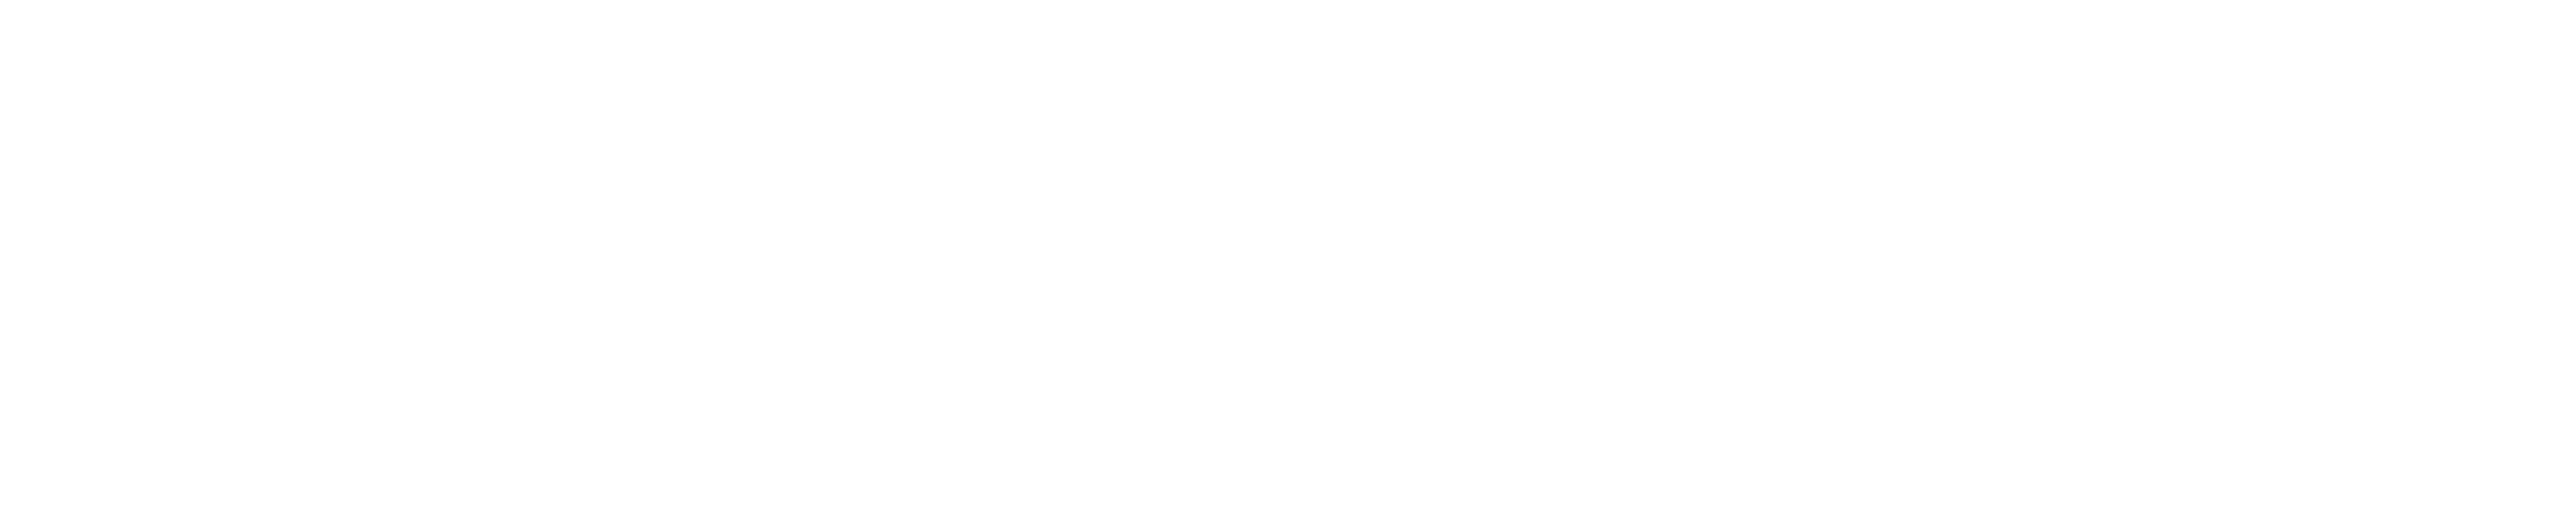 Mede-gefinancierd door de EU